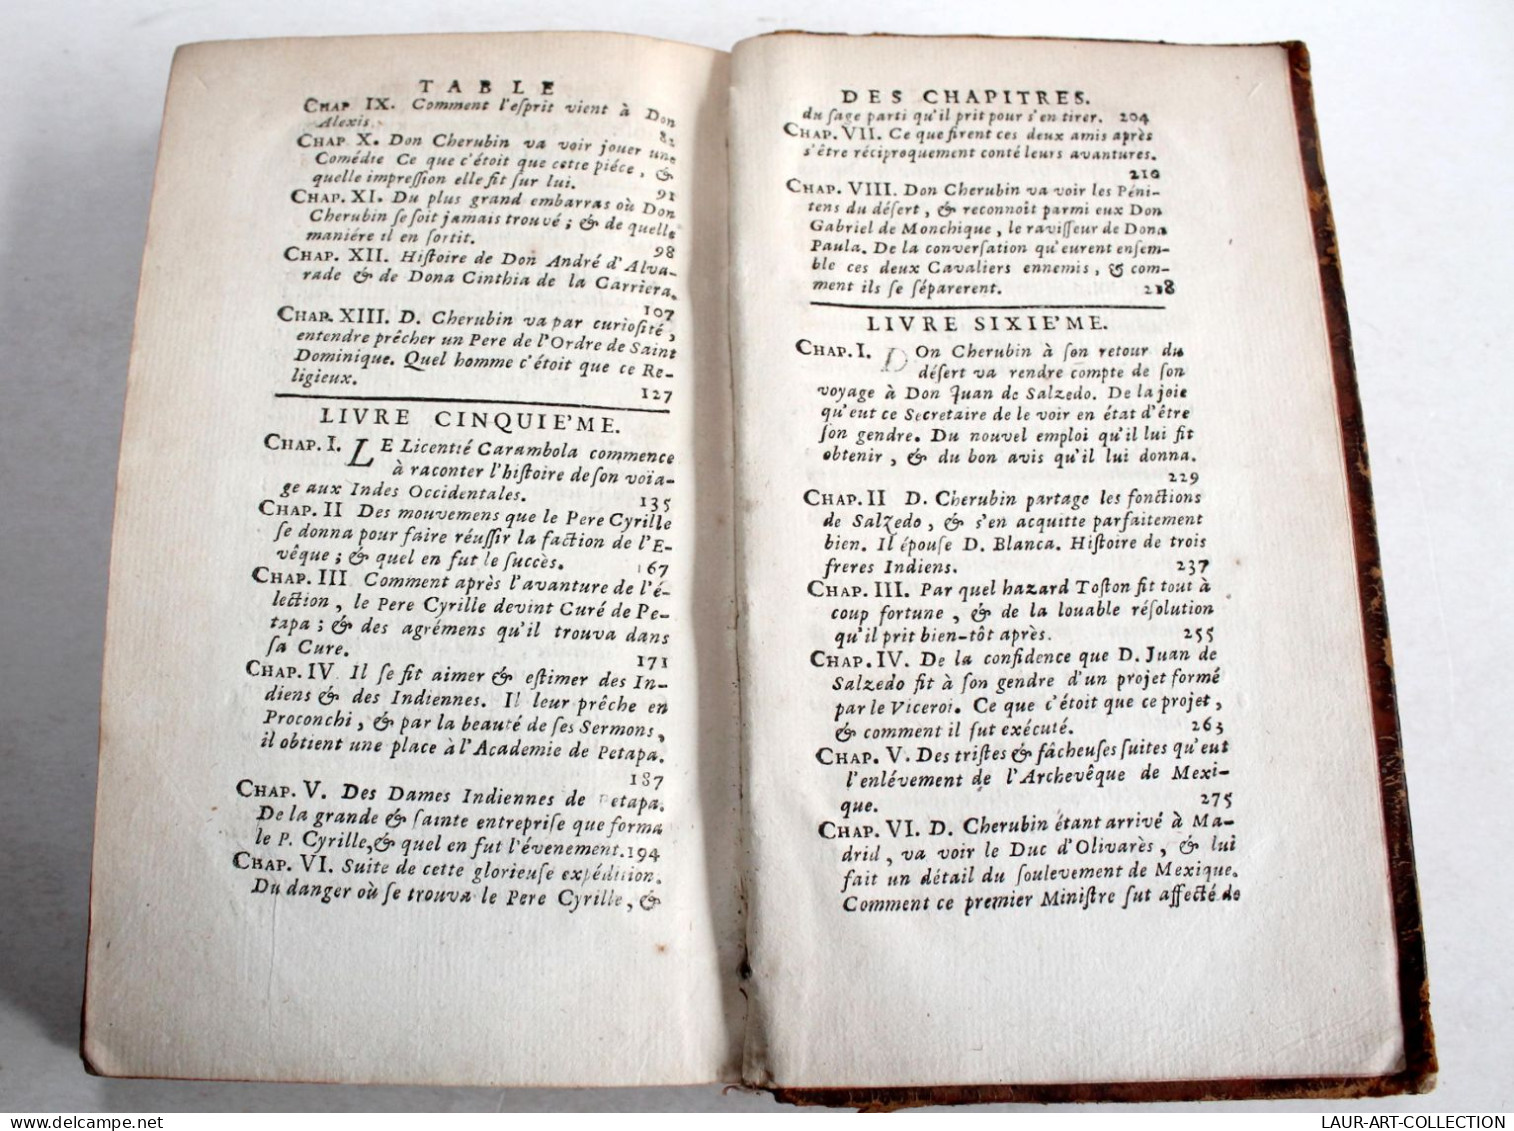 BACHELIER DE SALAMANQUE OU MEMOIRES DE CHERUBIN DE LA RONDA, LESAGE 1741 T1+T2/2 / LIVRE ANCIEN XVIIIe SIECLE (2204.234) - 1701-1800